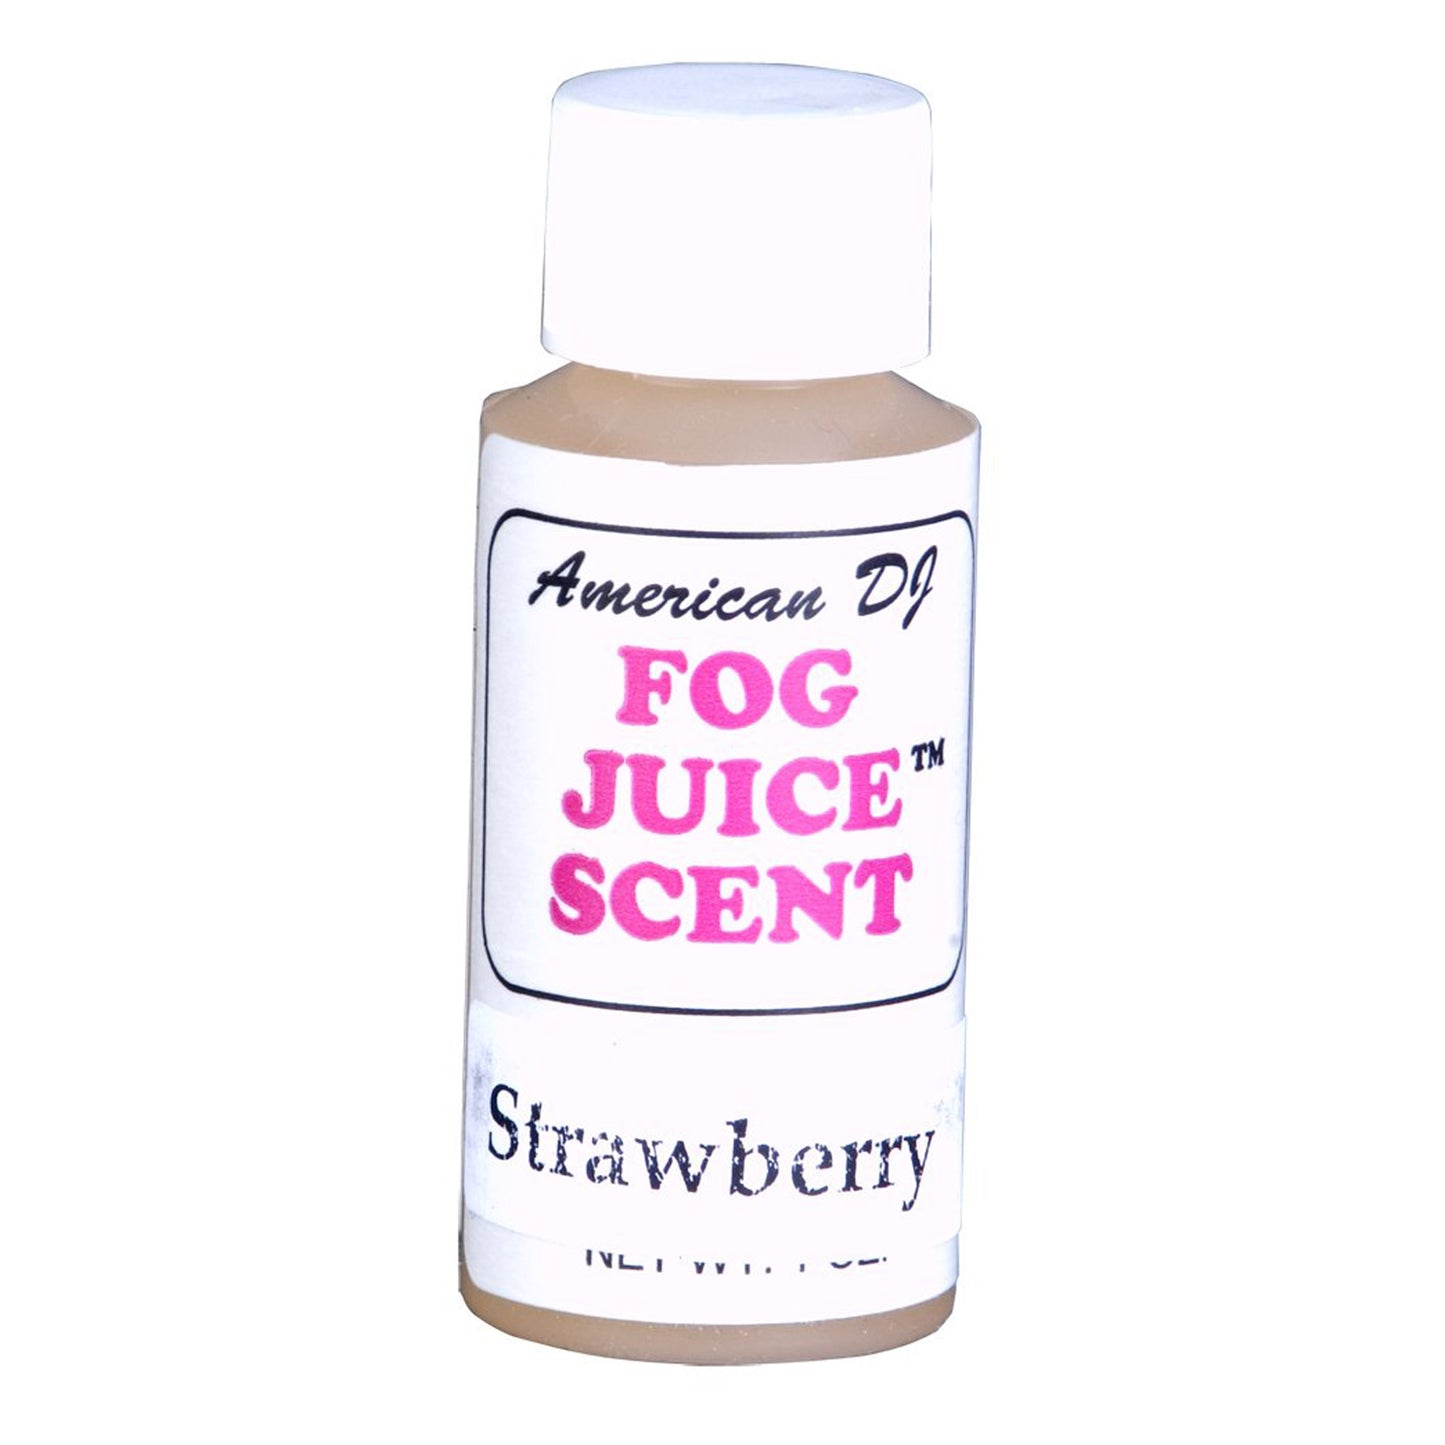 American DJ F-Scent Scent for Fog Juice. 1 oz. bottle